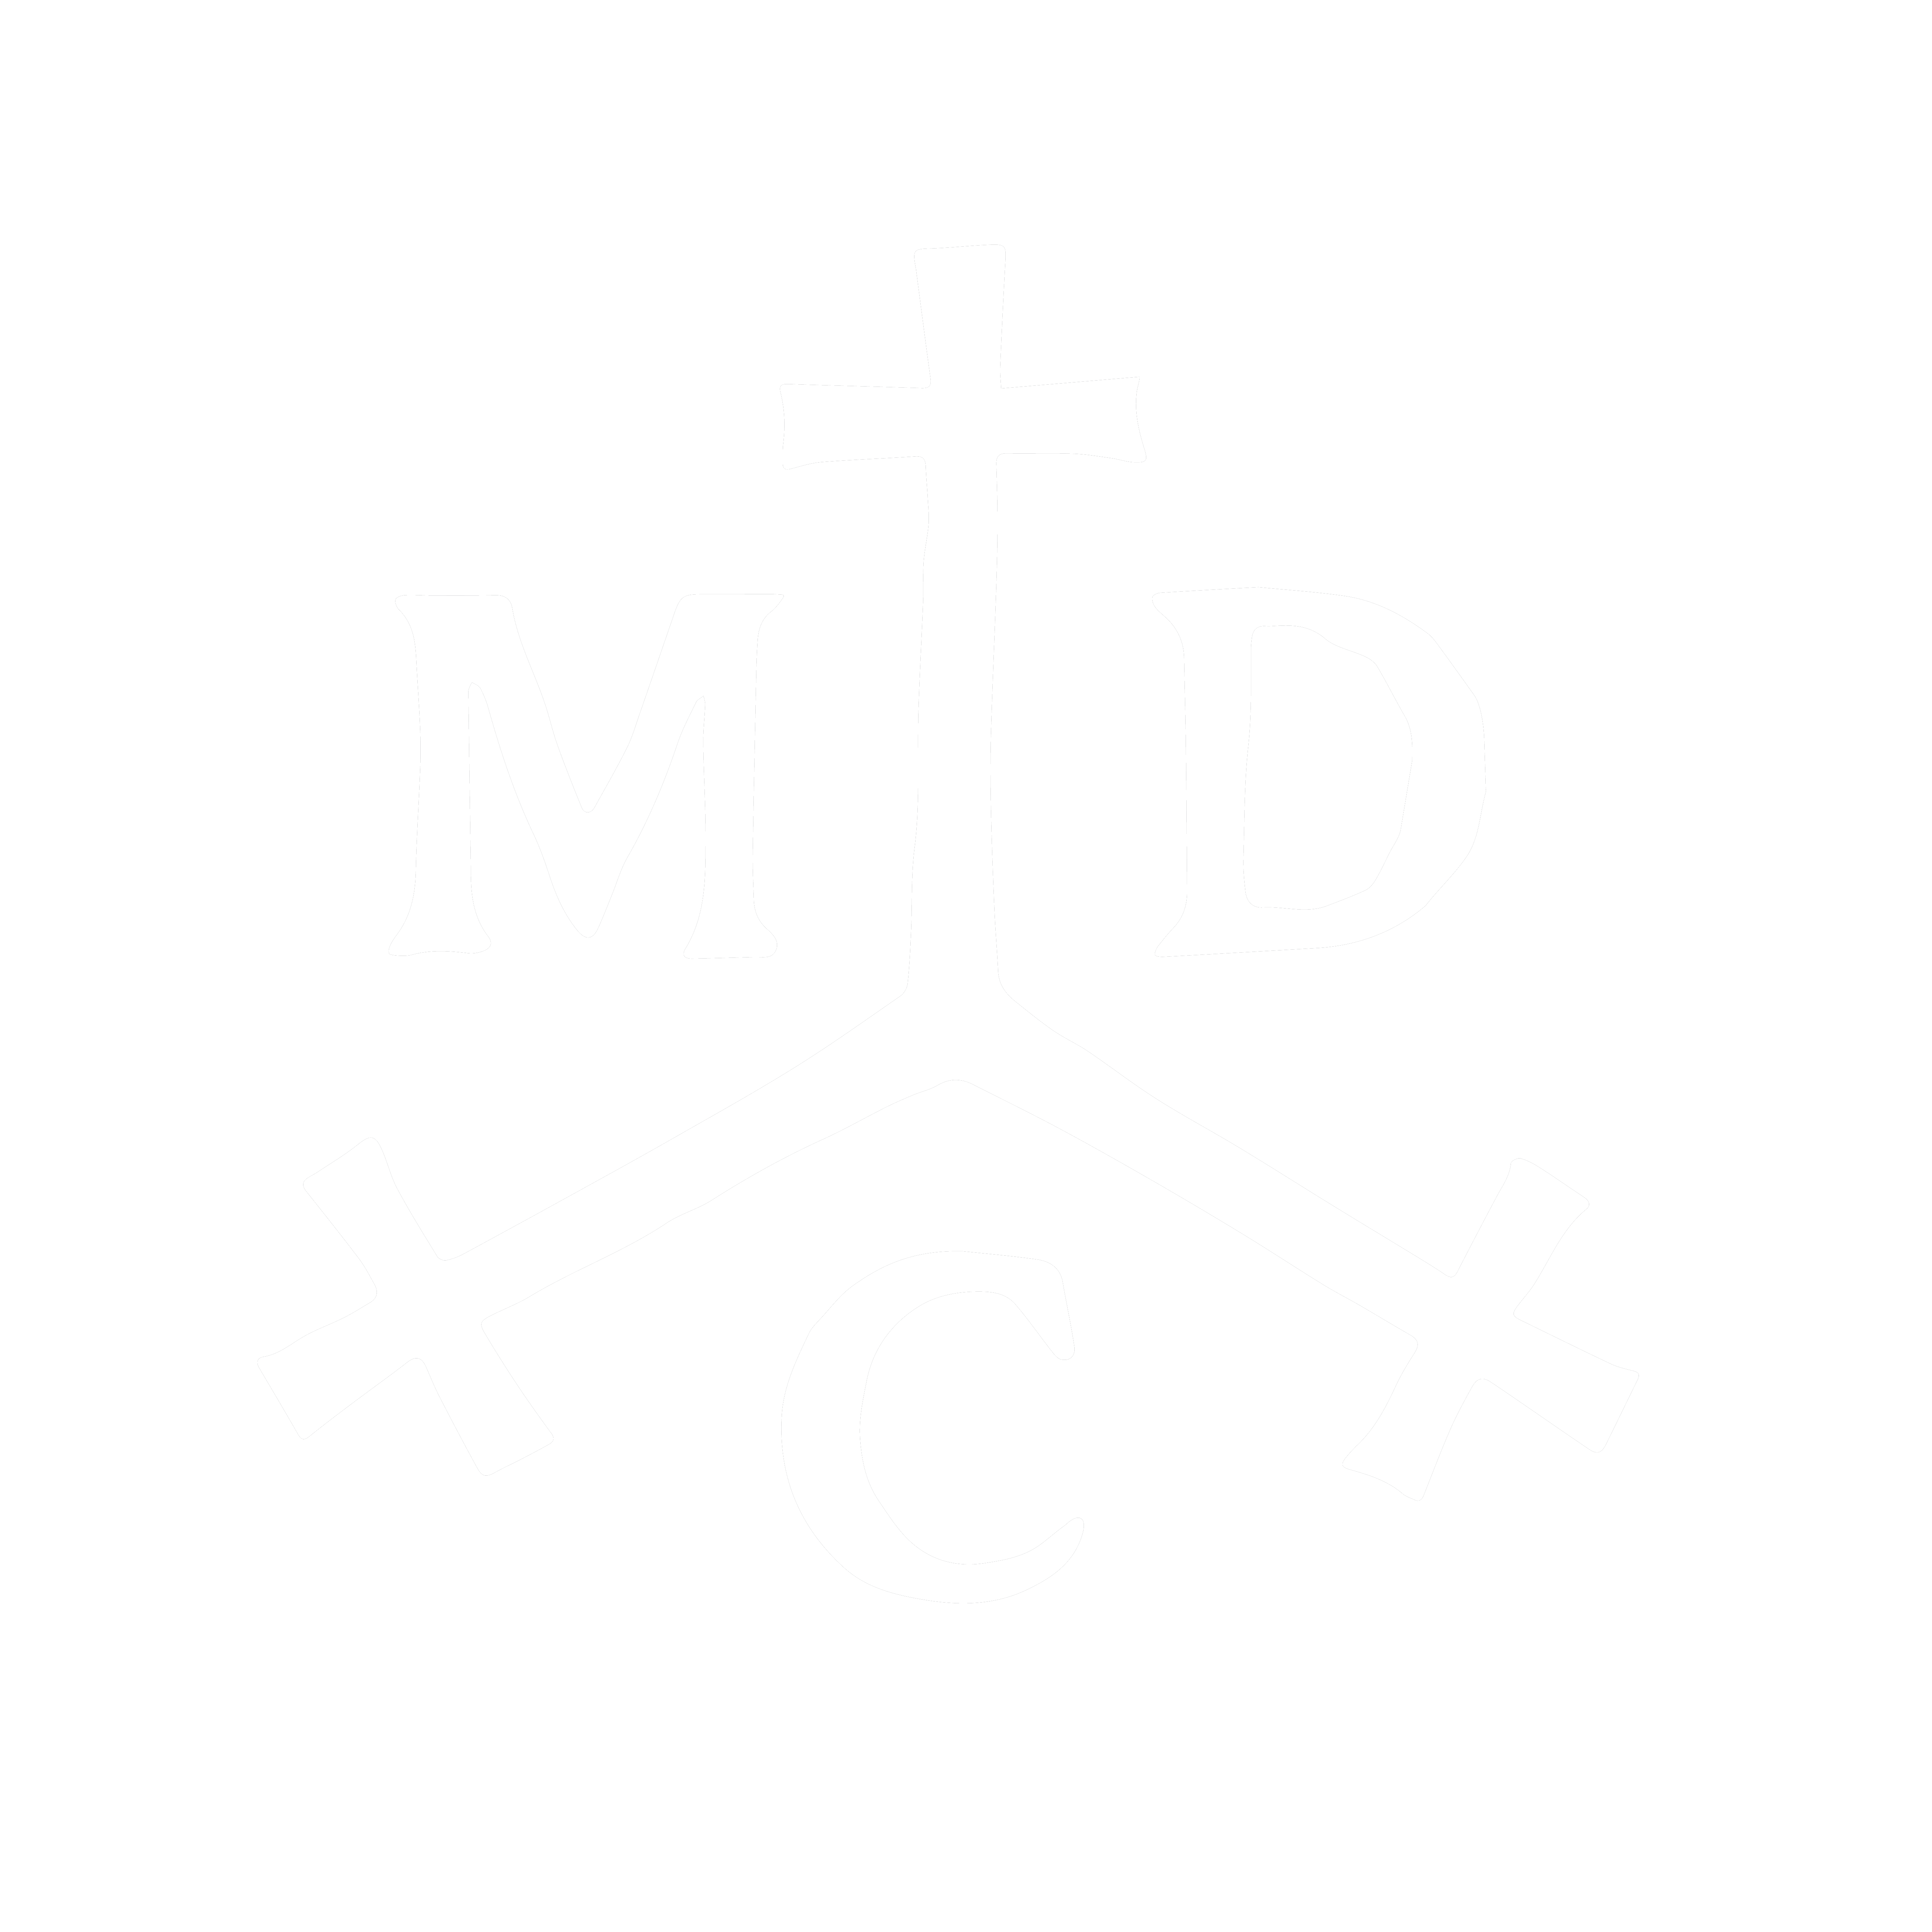 MDC Records